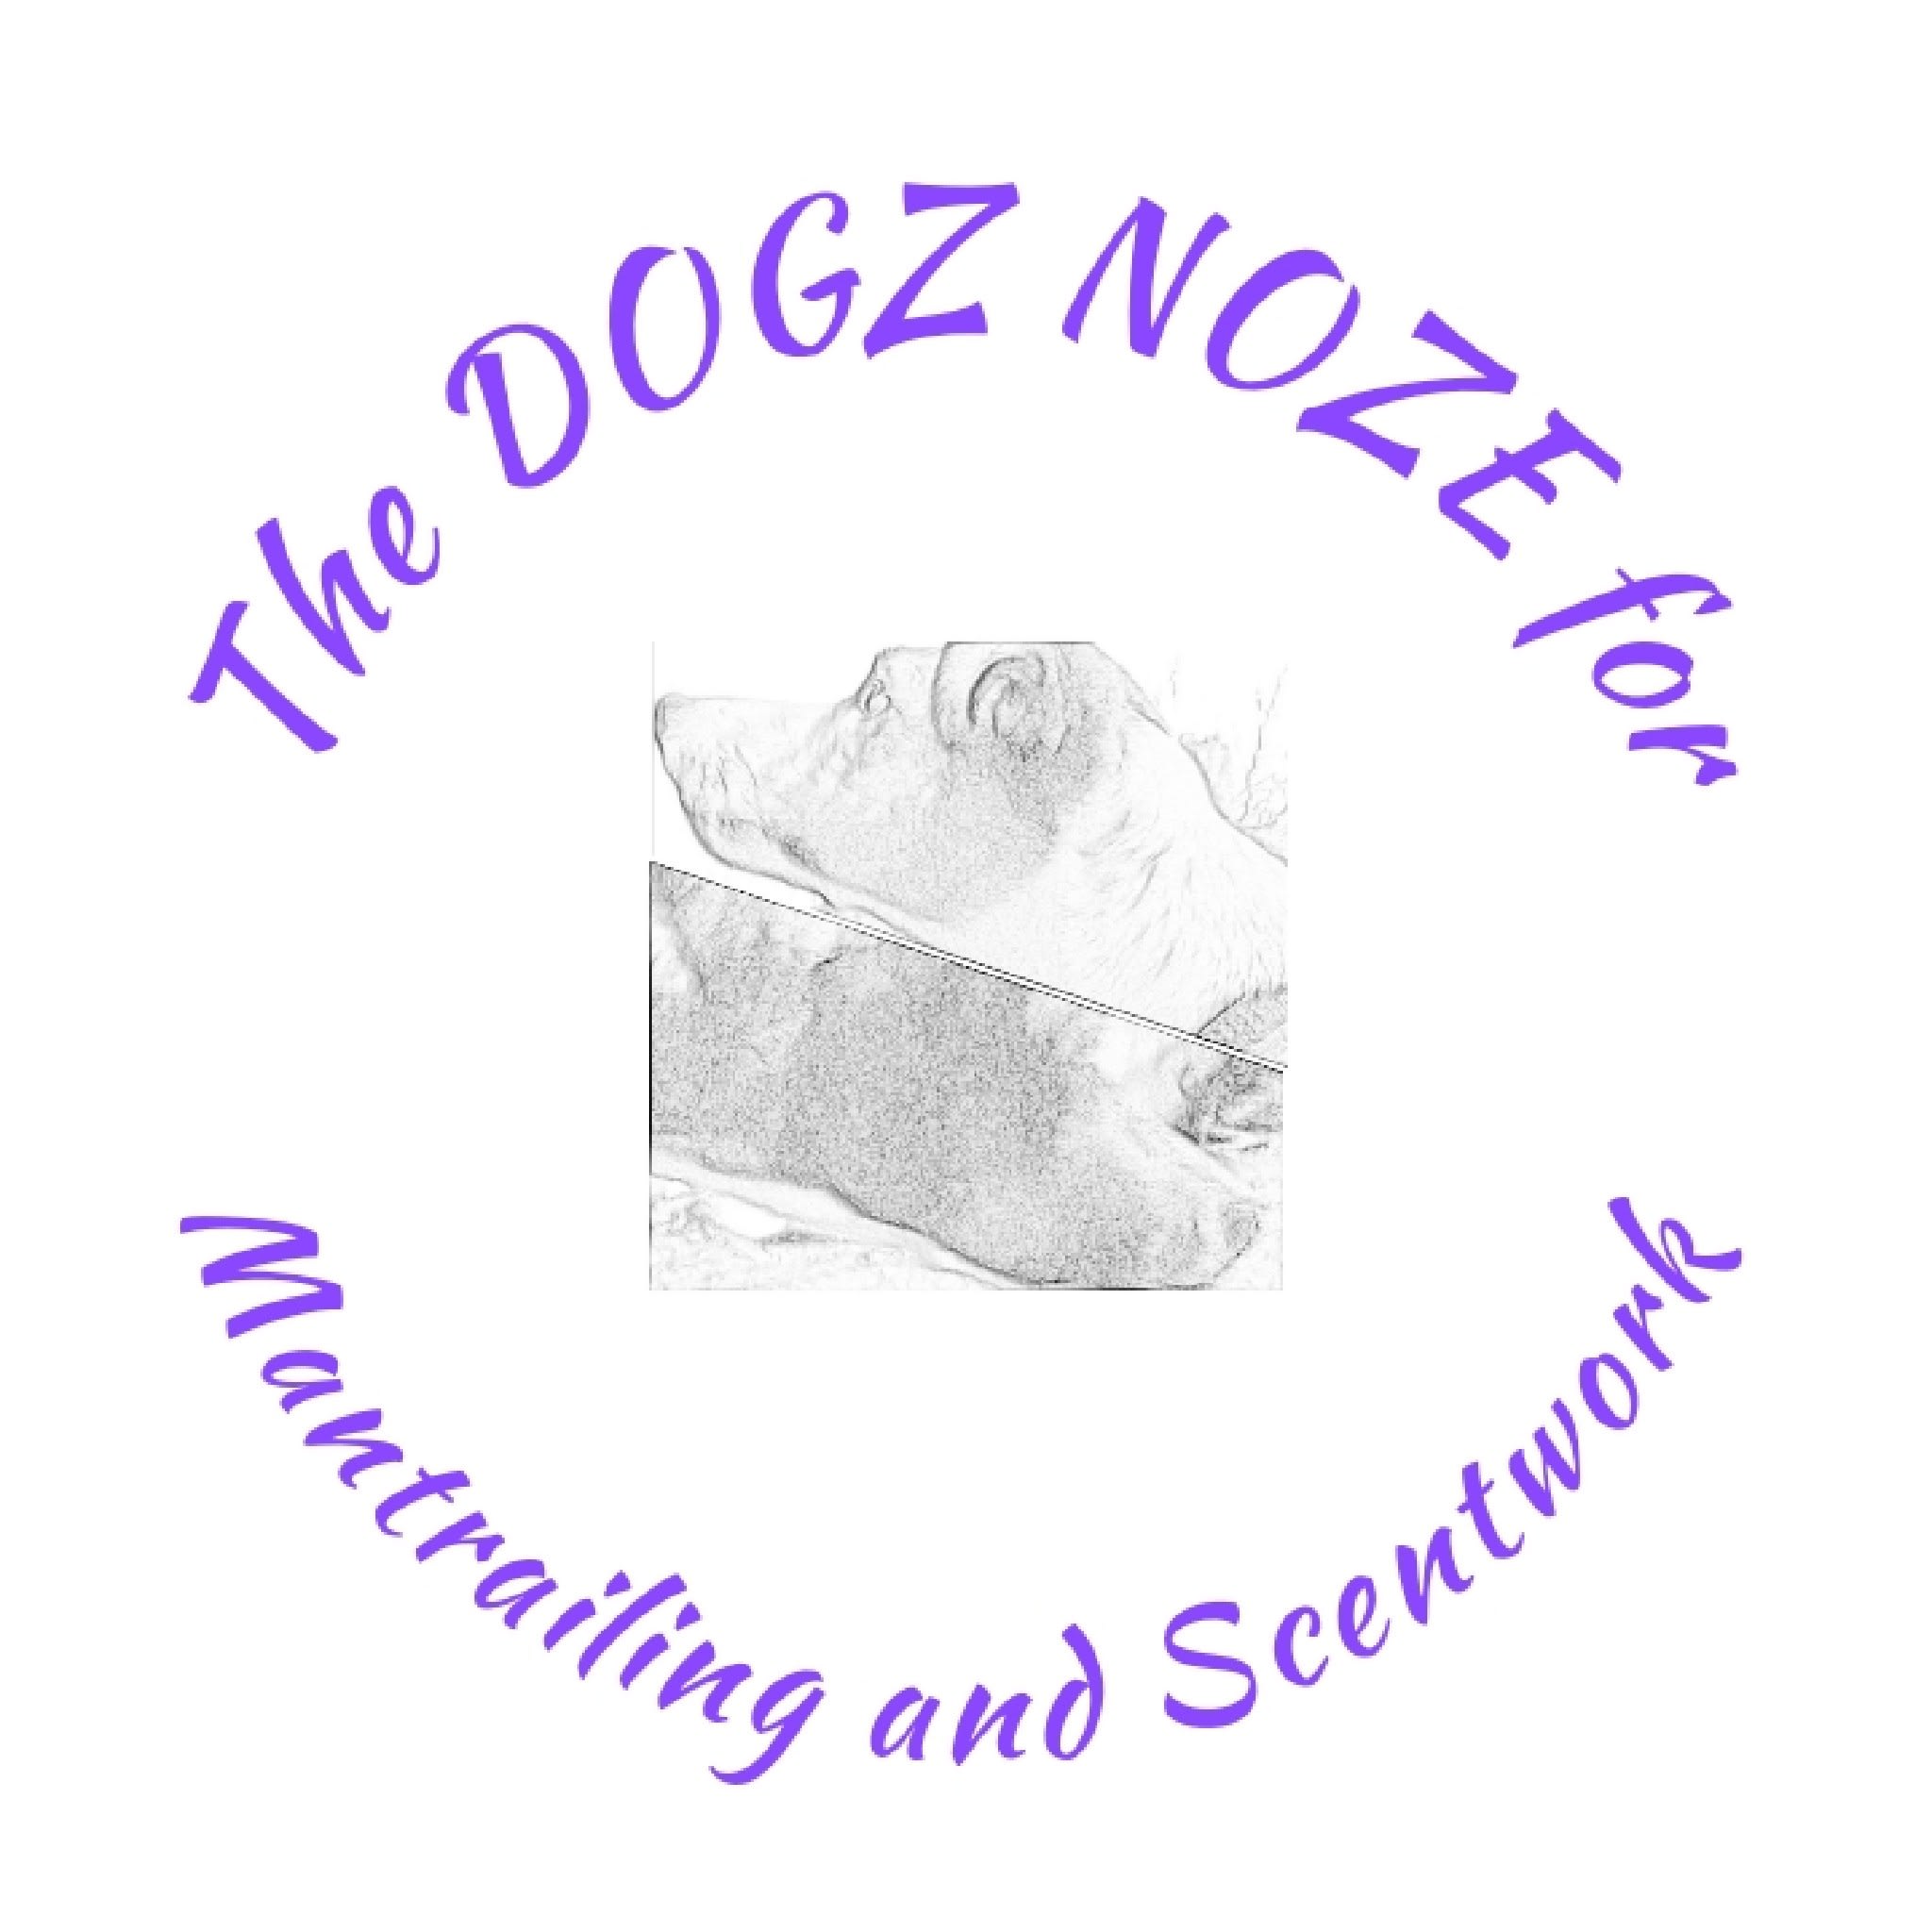 The Dogz Noze